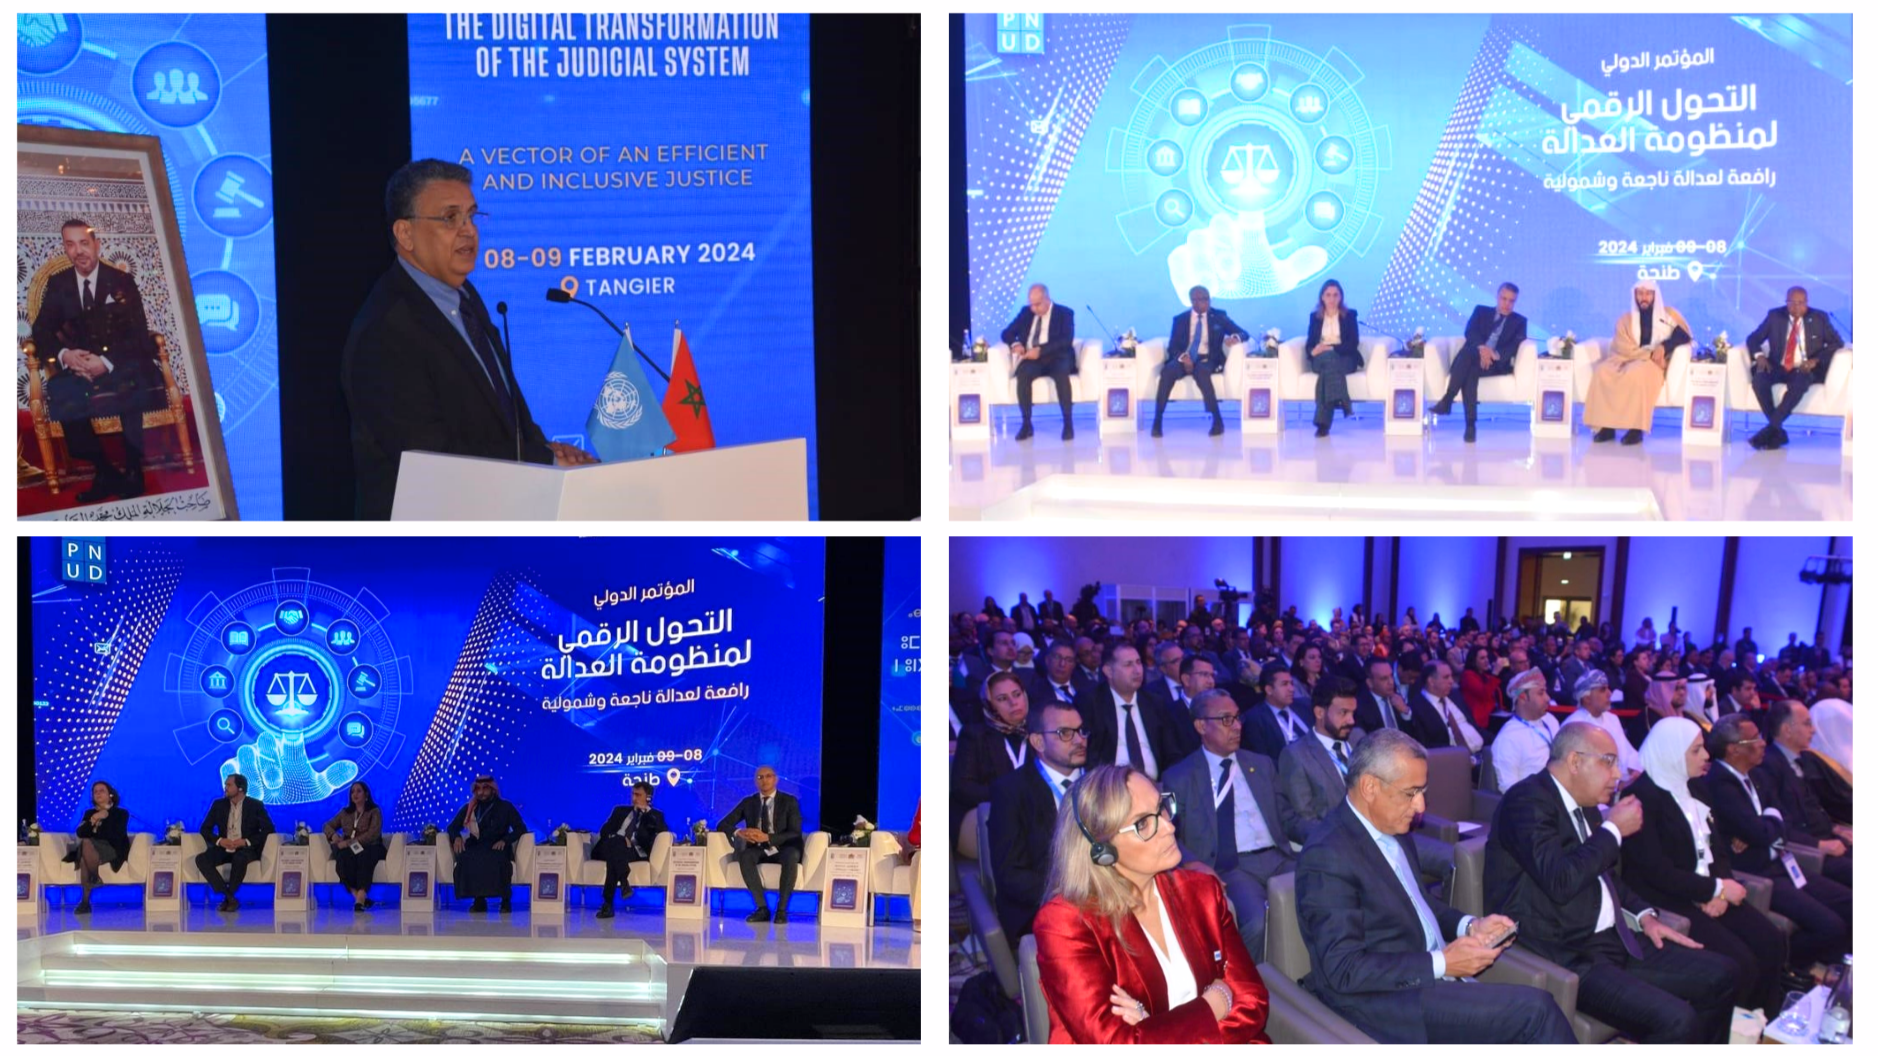 Participation de la CEPEJ à la conférence internationale sur la transformation digitale du système judiciaire (Tanger, 8-9 février 2024)